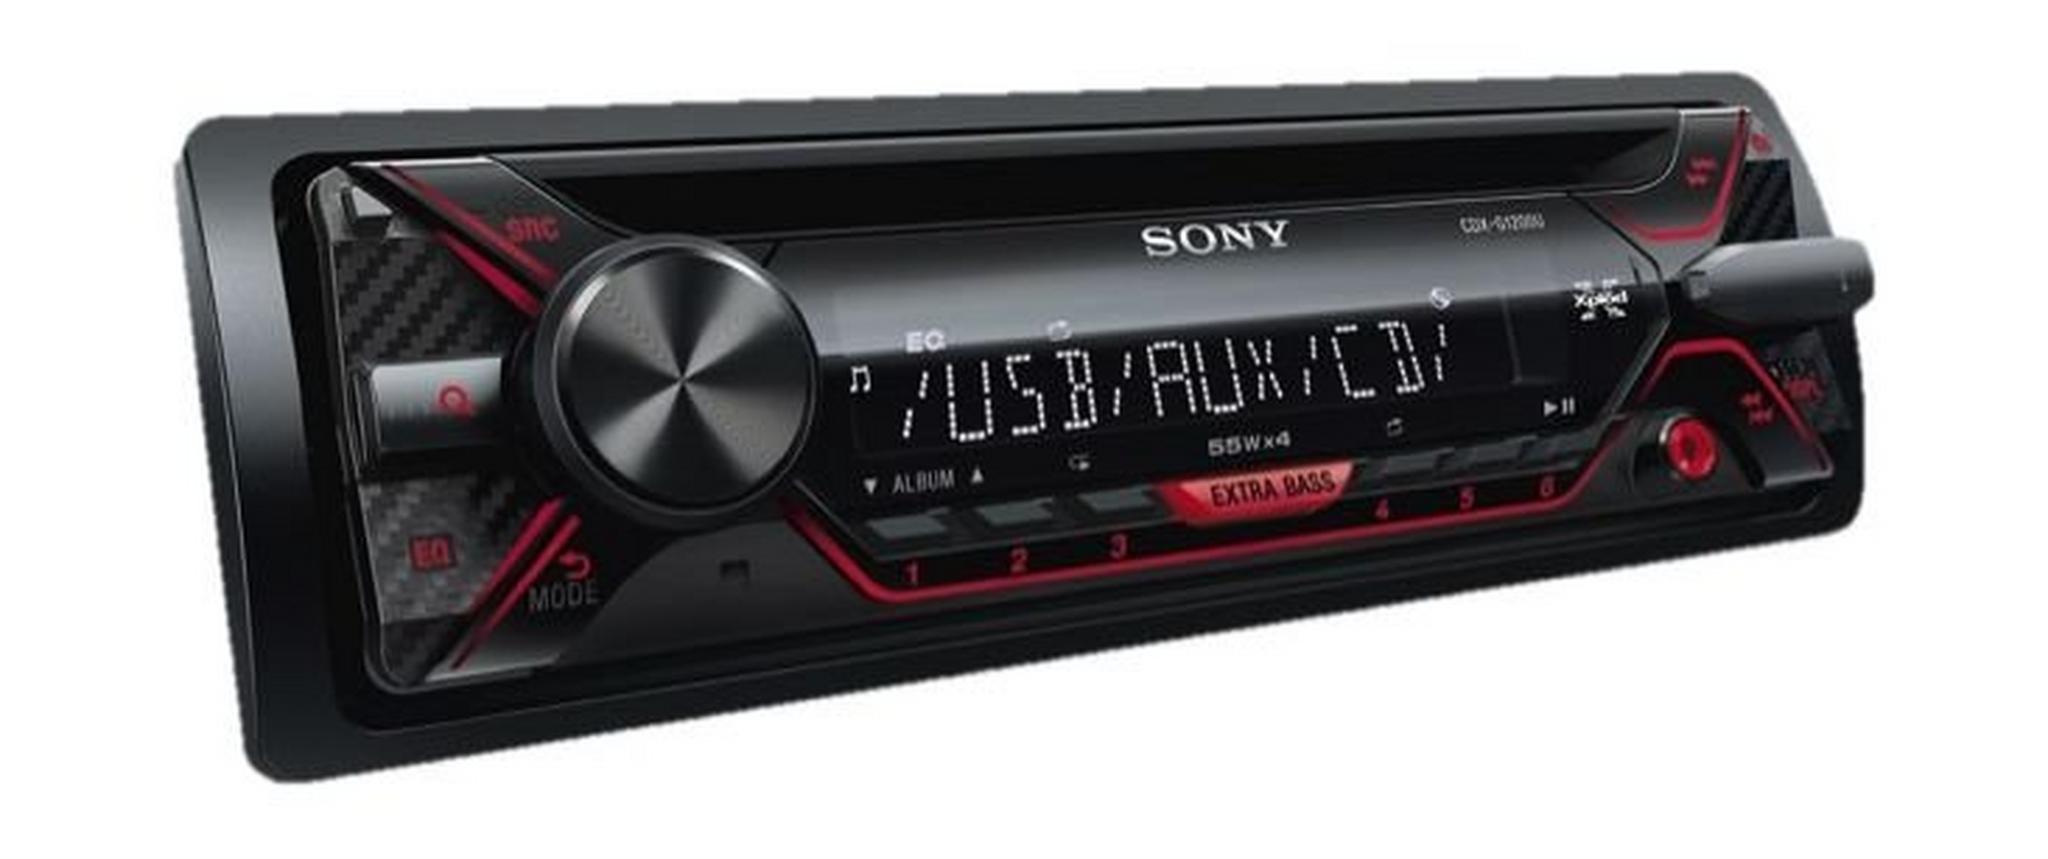 Sony USB CD In Car Receiver (CDX-G1200U) - Black